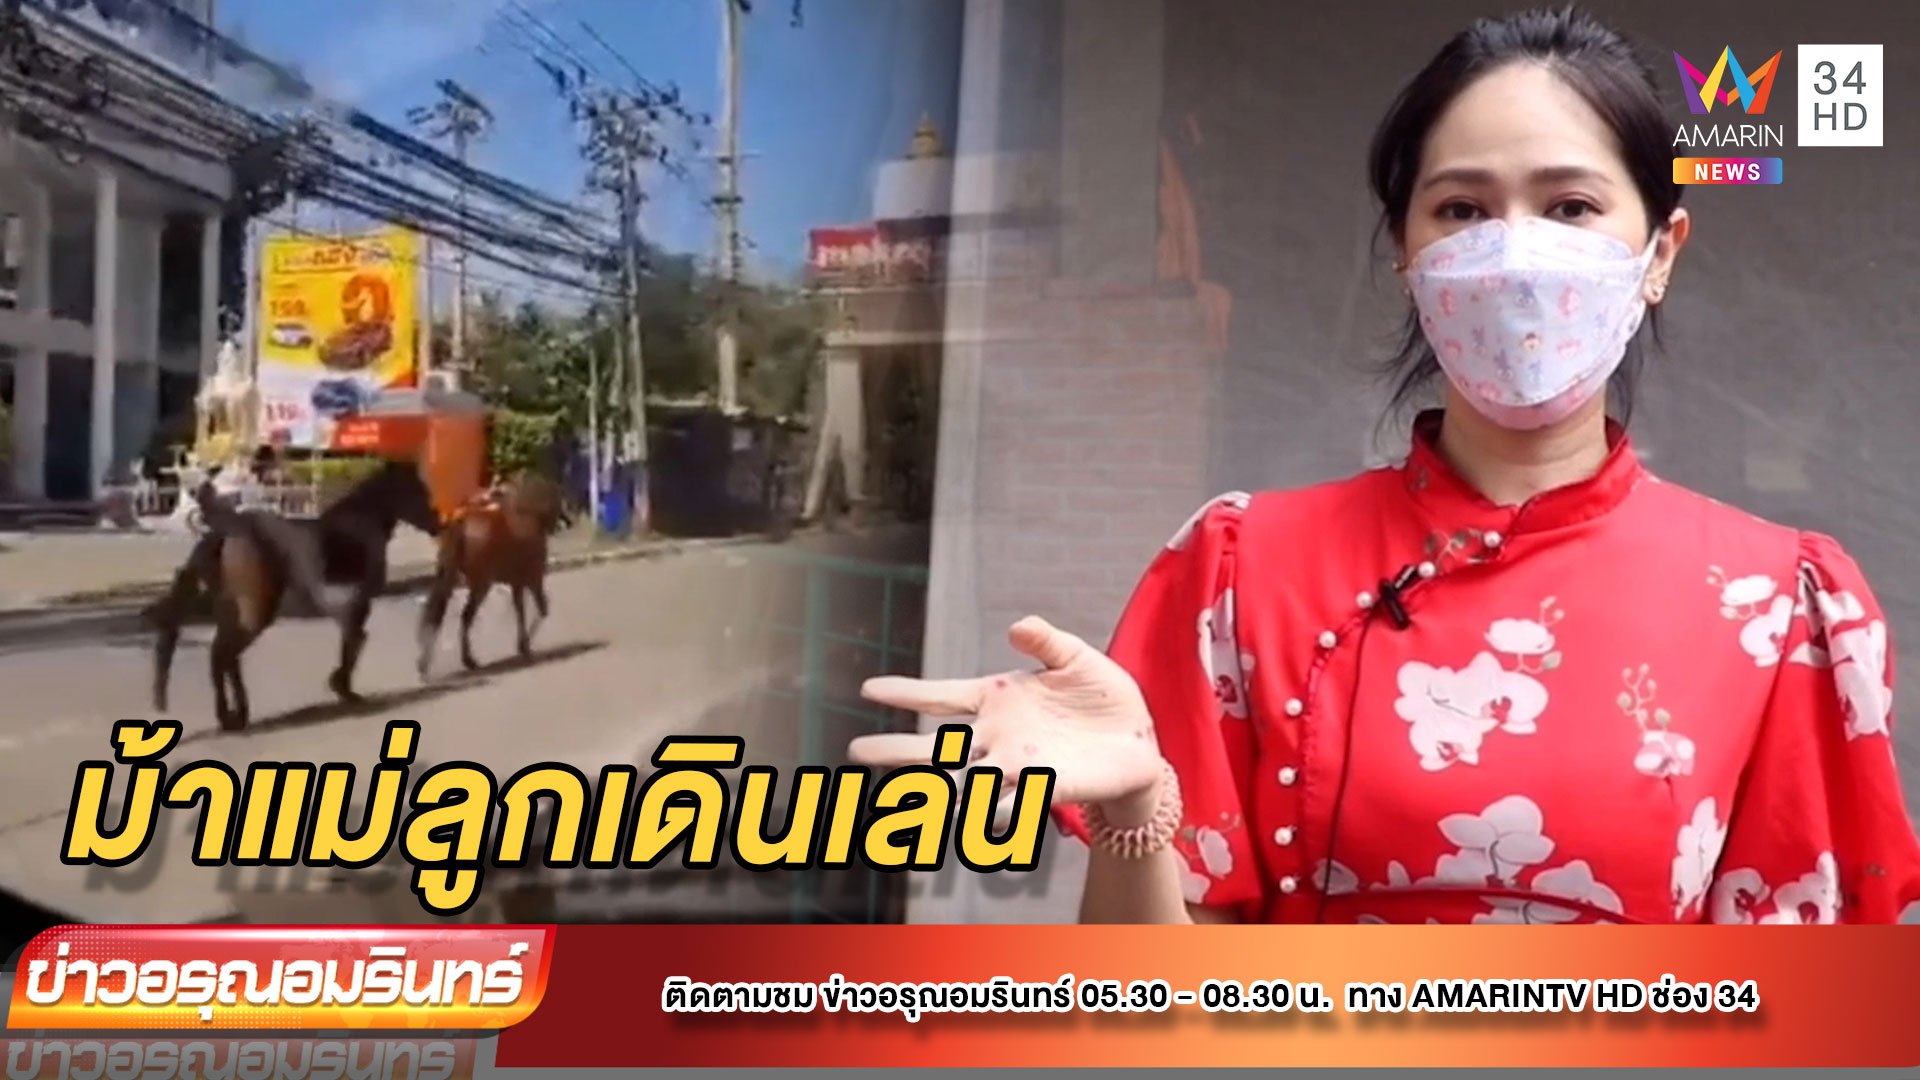 ม้าแม่ลูก สุดชิลล์ เดินเล่นบนถนนไม่สนรถ รับคลายล็อก 1 ตุลาคม | ข่าวอรุณอมรินทร์ | 1 ต.ค. 64 | AMARIN TVHD34